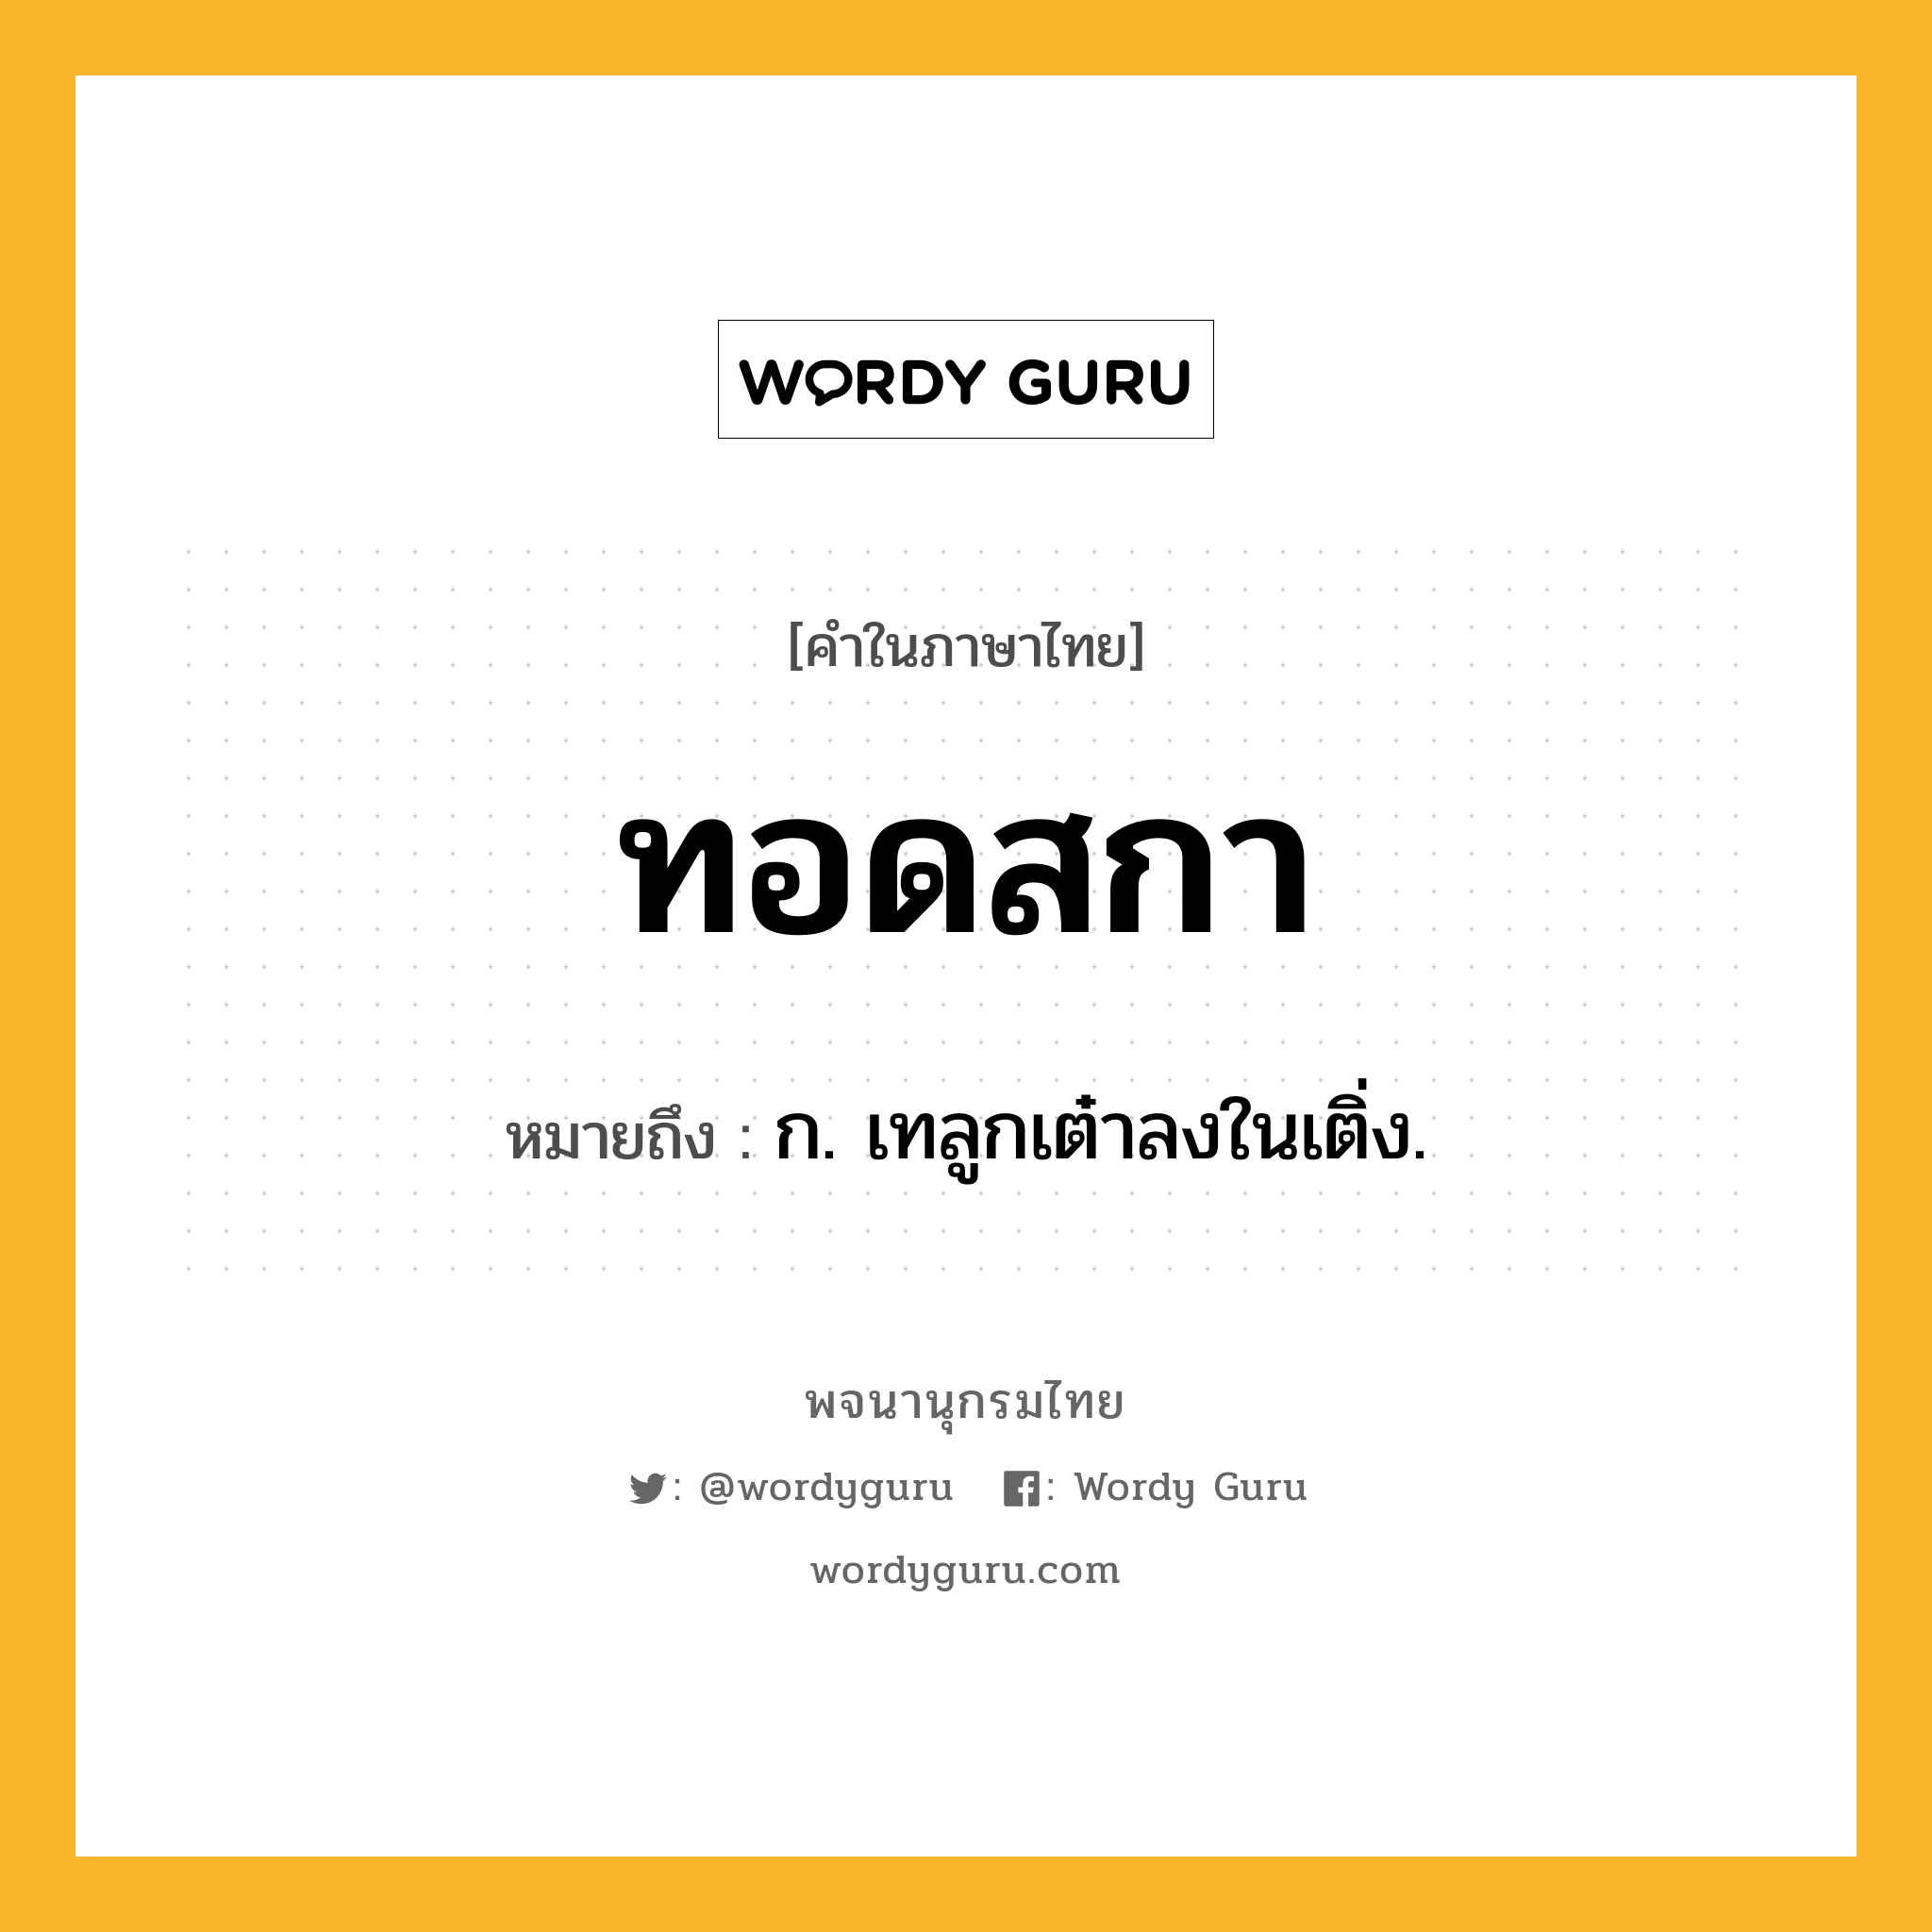 ทอดสกา ความหมาย หมายถึงอะไร?, คำในภาษาไทย ทอดสกา หมายถึง ก. เทลูกเต๋าลงในเติ่ง.